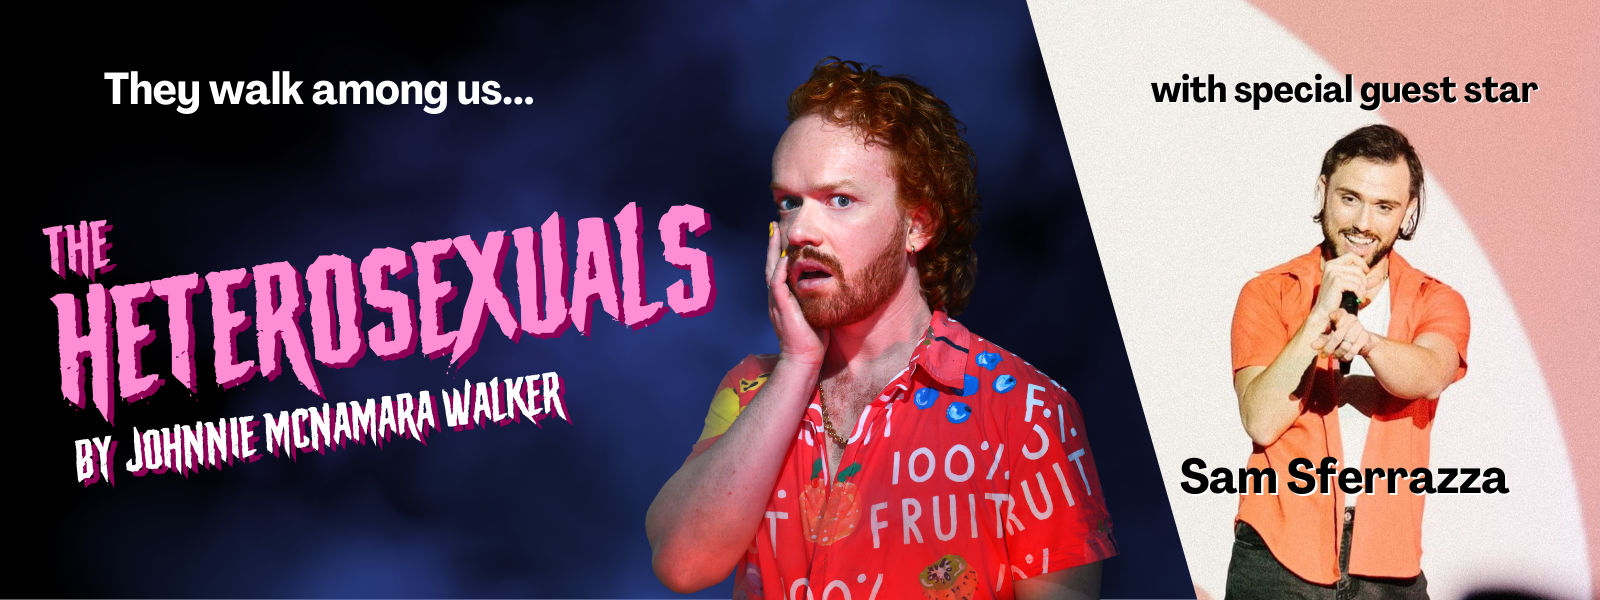 The Heterosexuals show poster